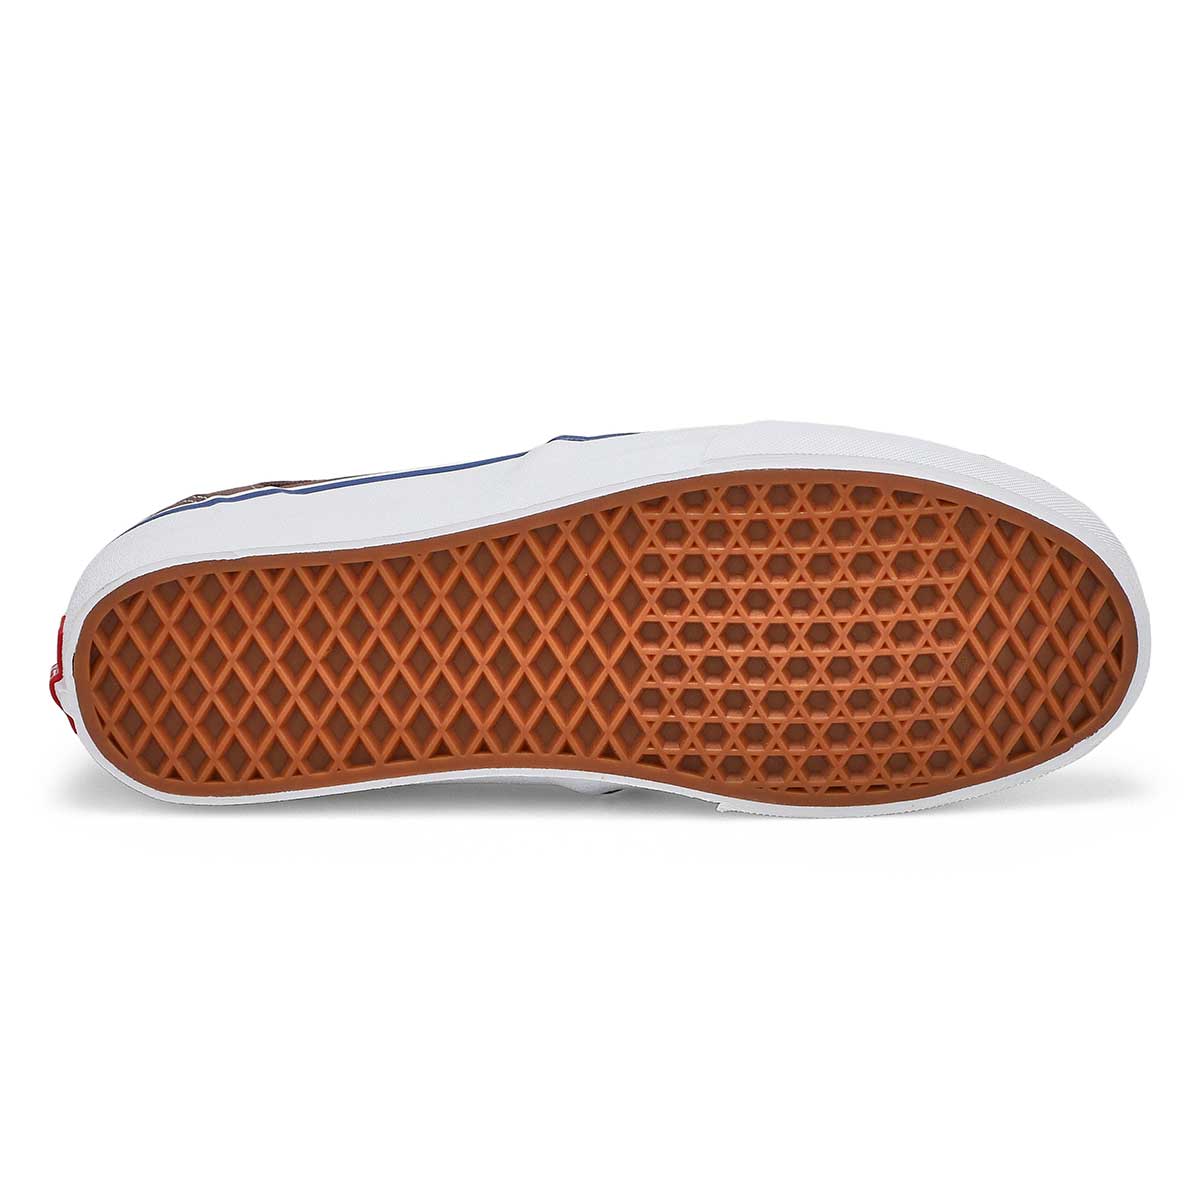 Men's Asher Deluxe Slip On Sneaker - Taupe/White